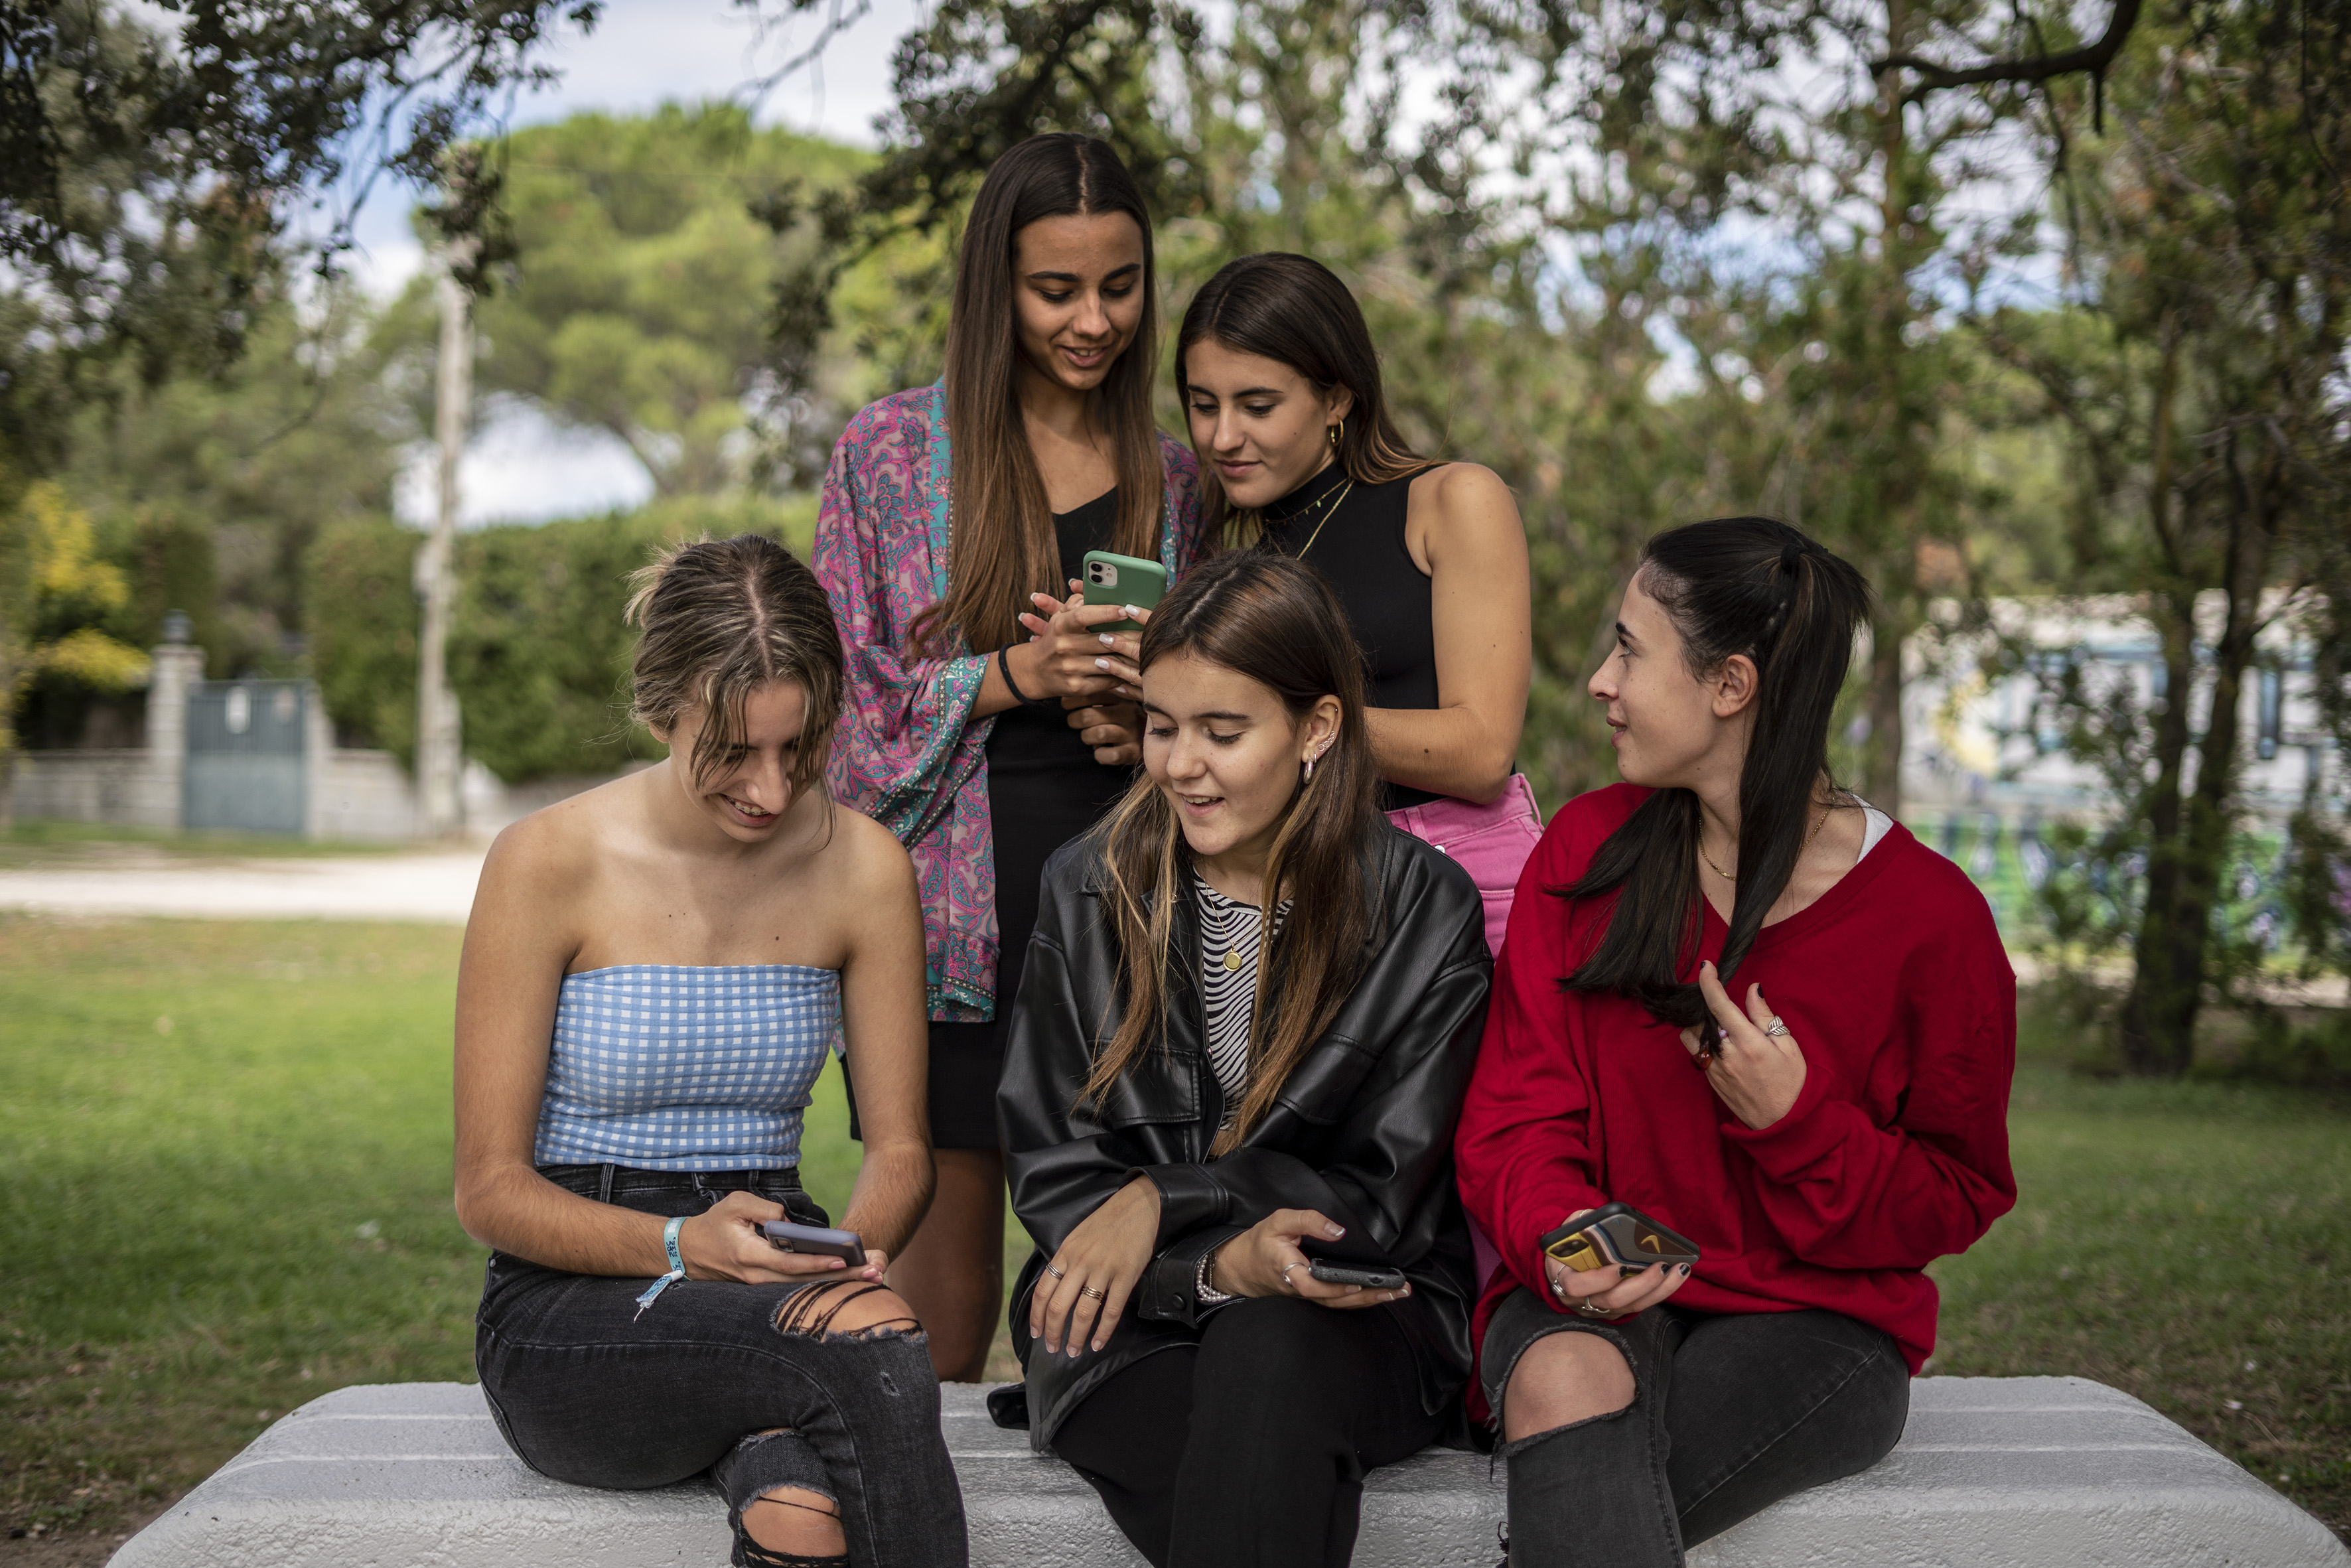 Xxxii 15sal Ke - La adolescencia sin filtros en Instagram | Sociedad | EL PAÃS